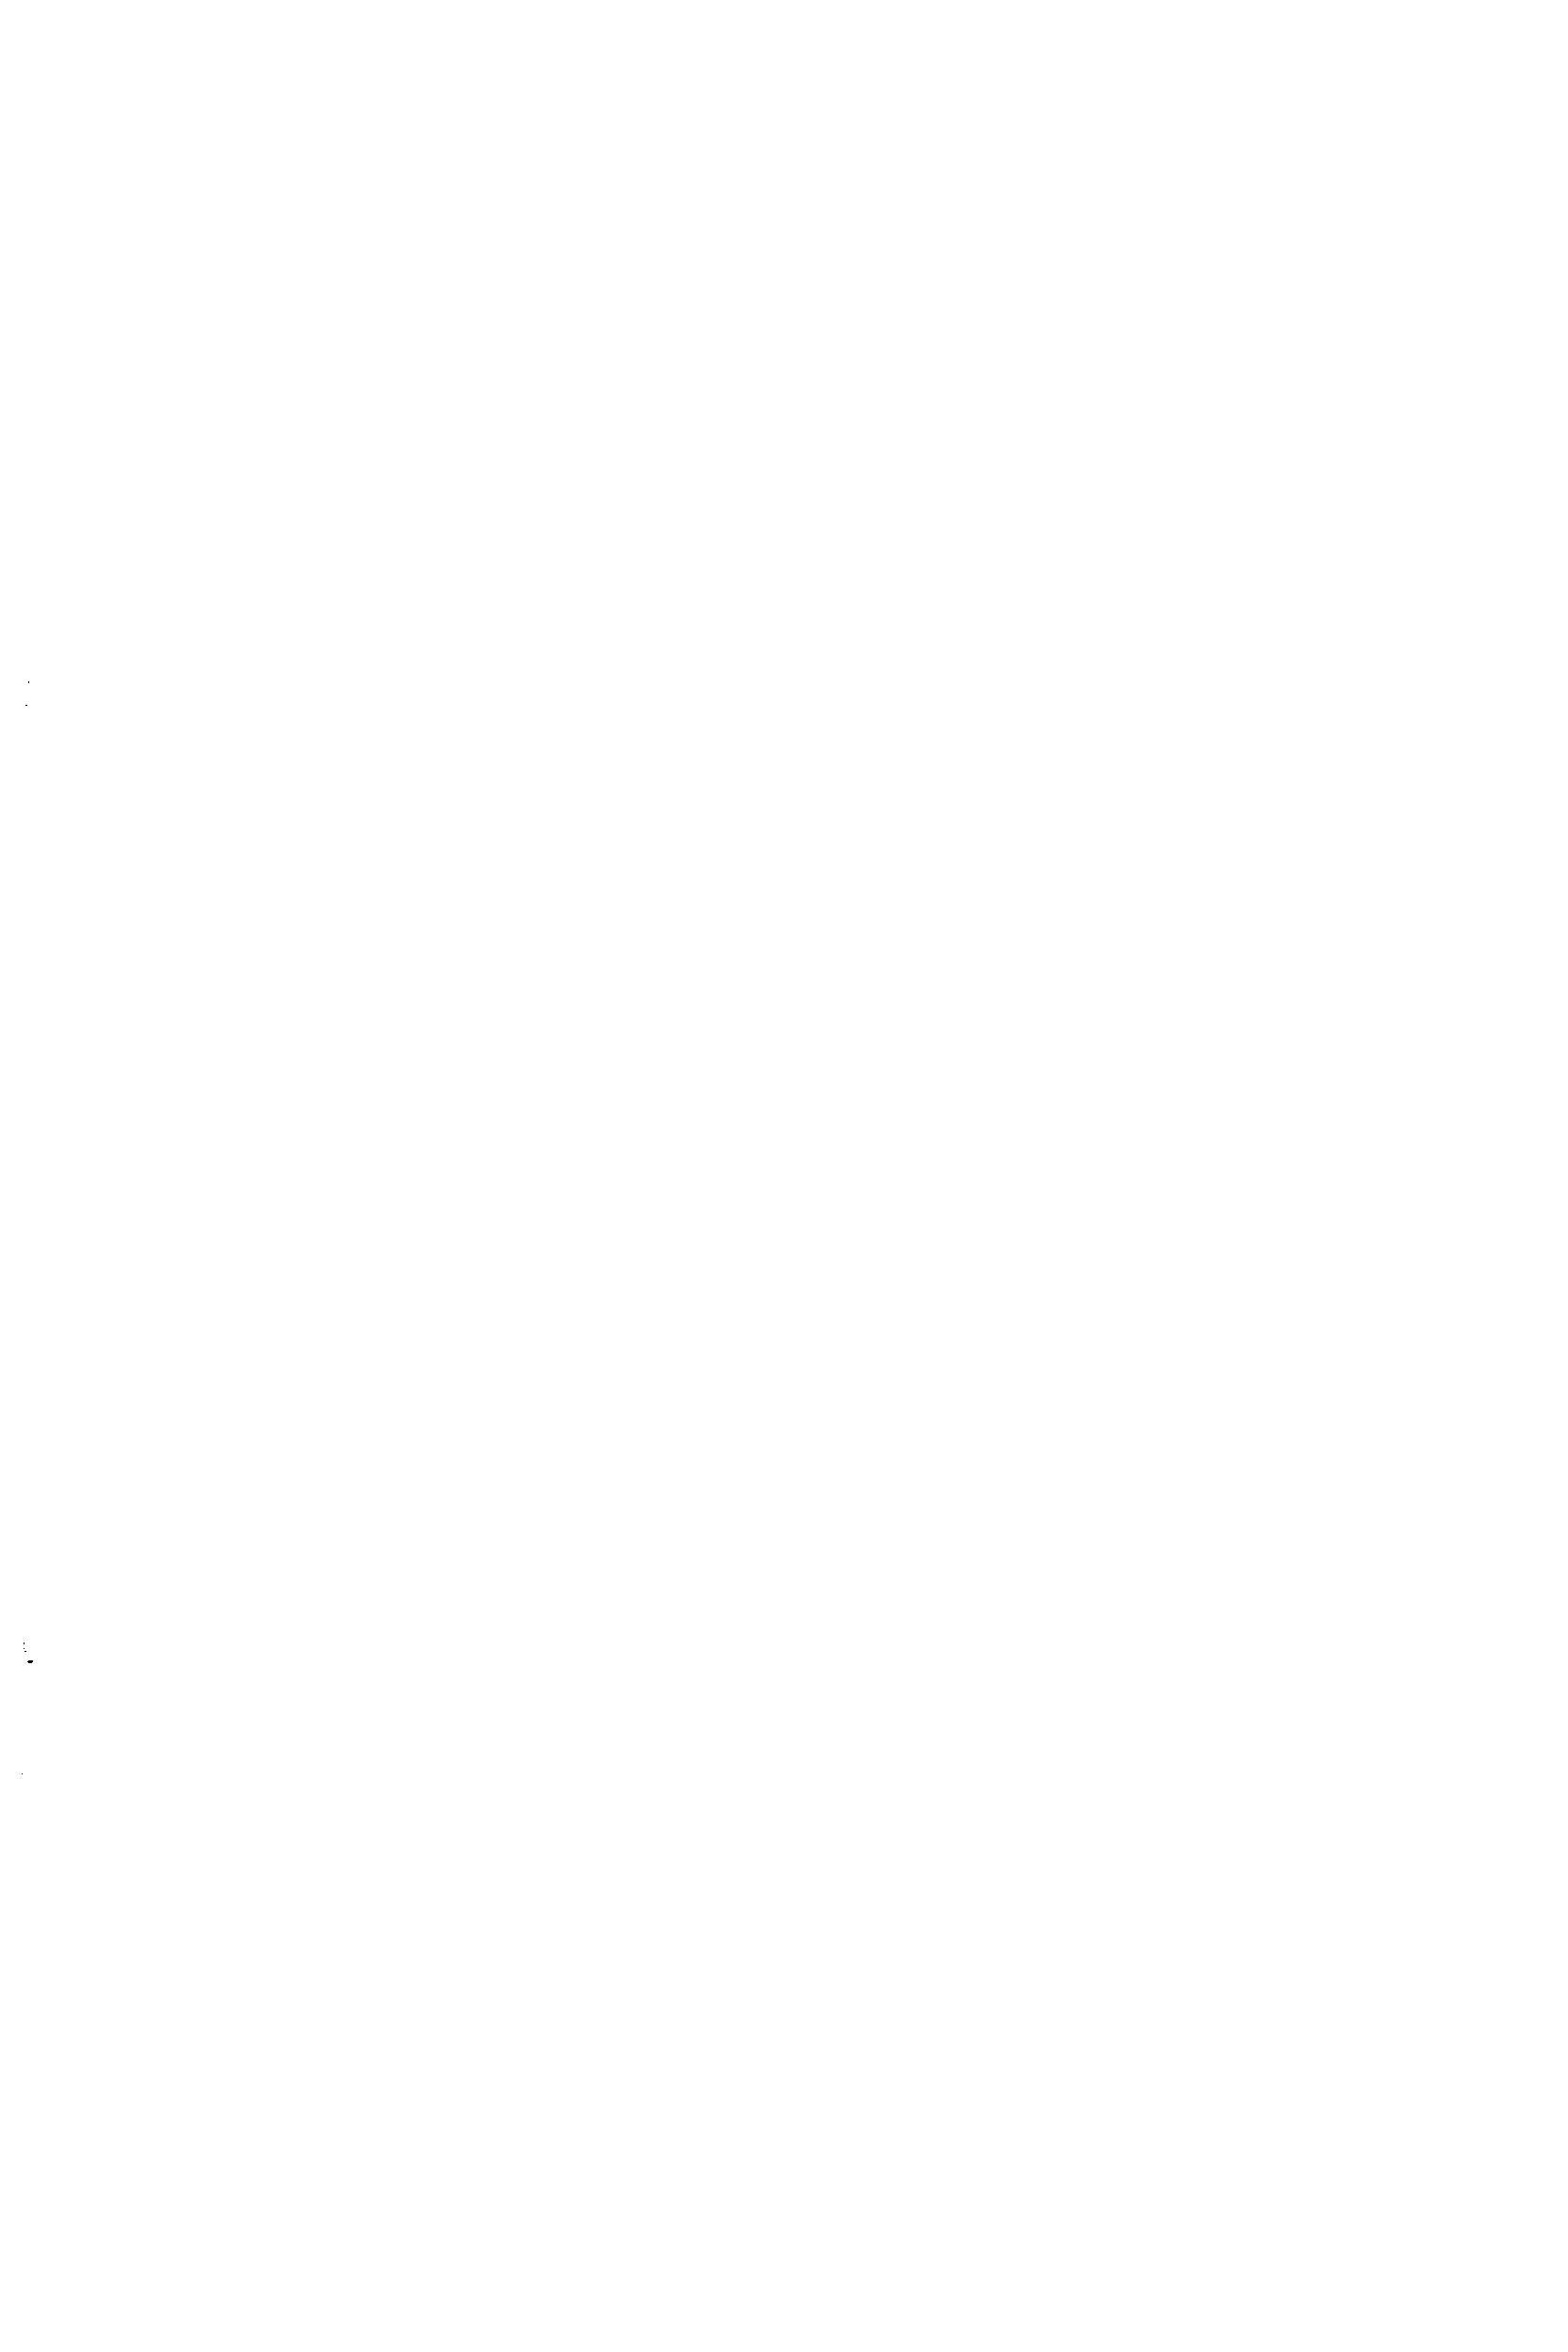 Рис. 12.6. Конструкции сварных соединений стальных труб и их элементов а — стыковые односторонние без скоса кромок б — стыковые односторонние со скосом одной кромки в — стыковые односторонние со скосом одной кромки с остающейся или удаляемой подкладкой г — стыковые односторонние со скосом двух кромок д — стыковые односторонние с подкладкой е — стыковые односторонние внахлестку ж — двусторонние угловые з — двусторонние для соединения с плоскими фланцами и — угловые со скосом одной кромки к — угловые со скосом одной кромки л — угловые со скосом одной кромки и с подкладкой м. — соединения под углом без скоса кромок н — соединения под углом с подкладкой
